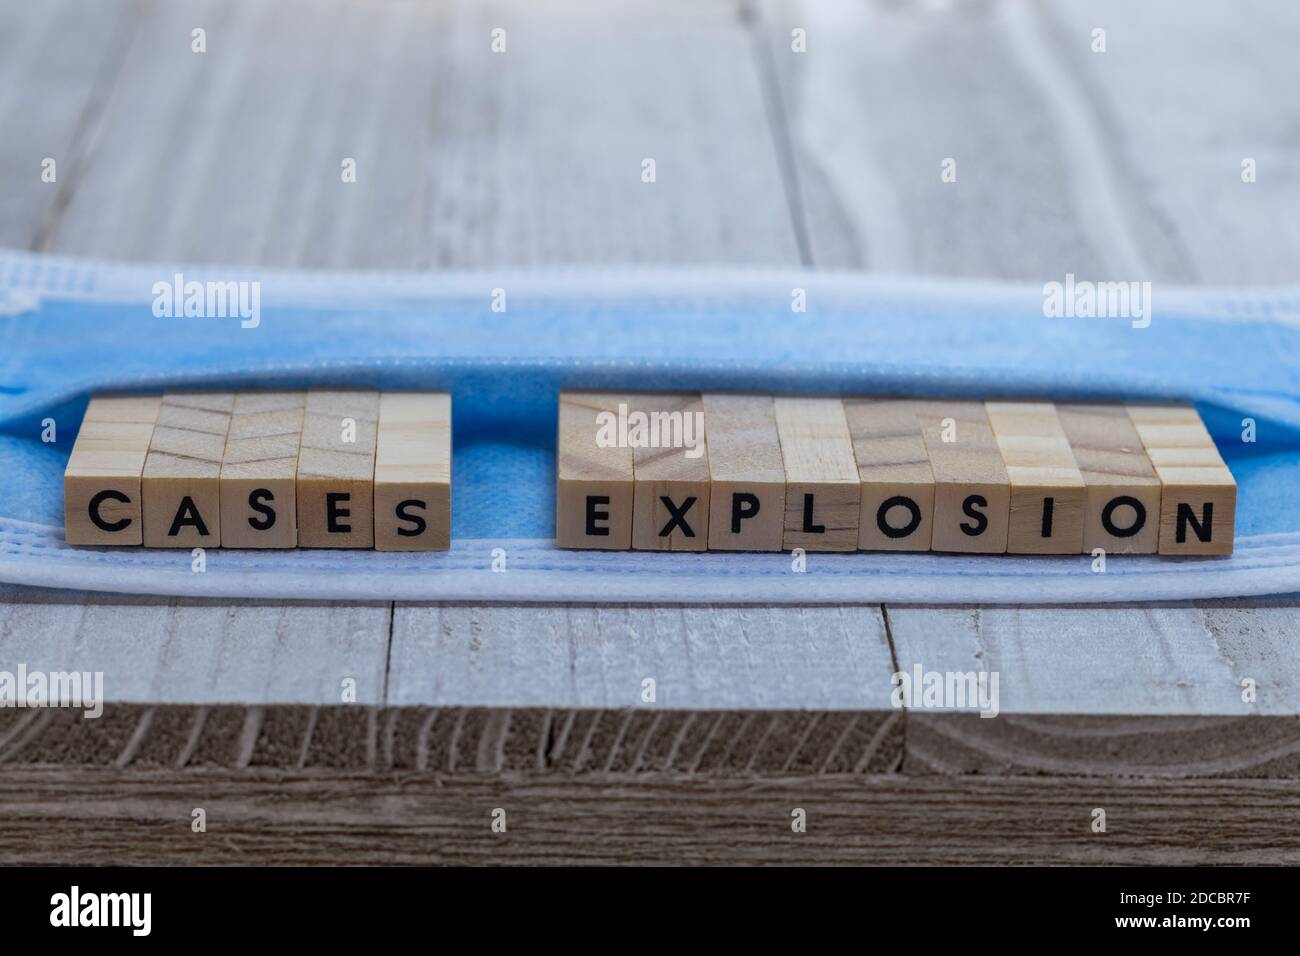 EXPLOSION von Fällen auf Gesichtsmaske covid Pandemiealarm Konzept Holzblock Buchstaben an Bord kühlen blauen Ton Hintergrund Stockfoto